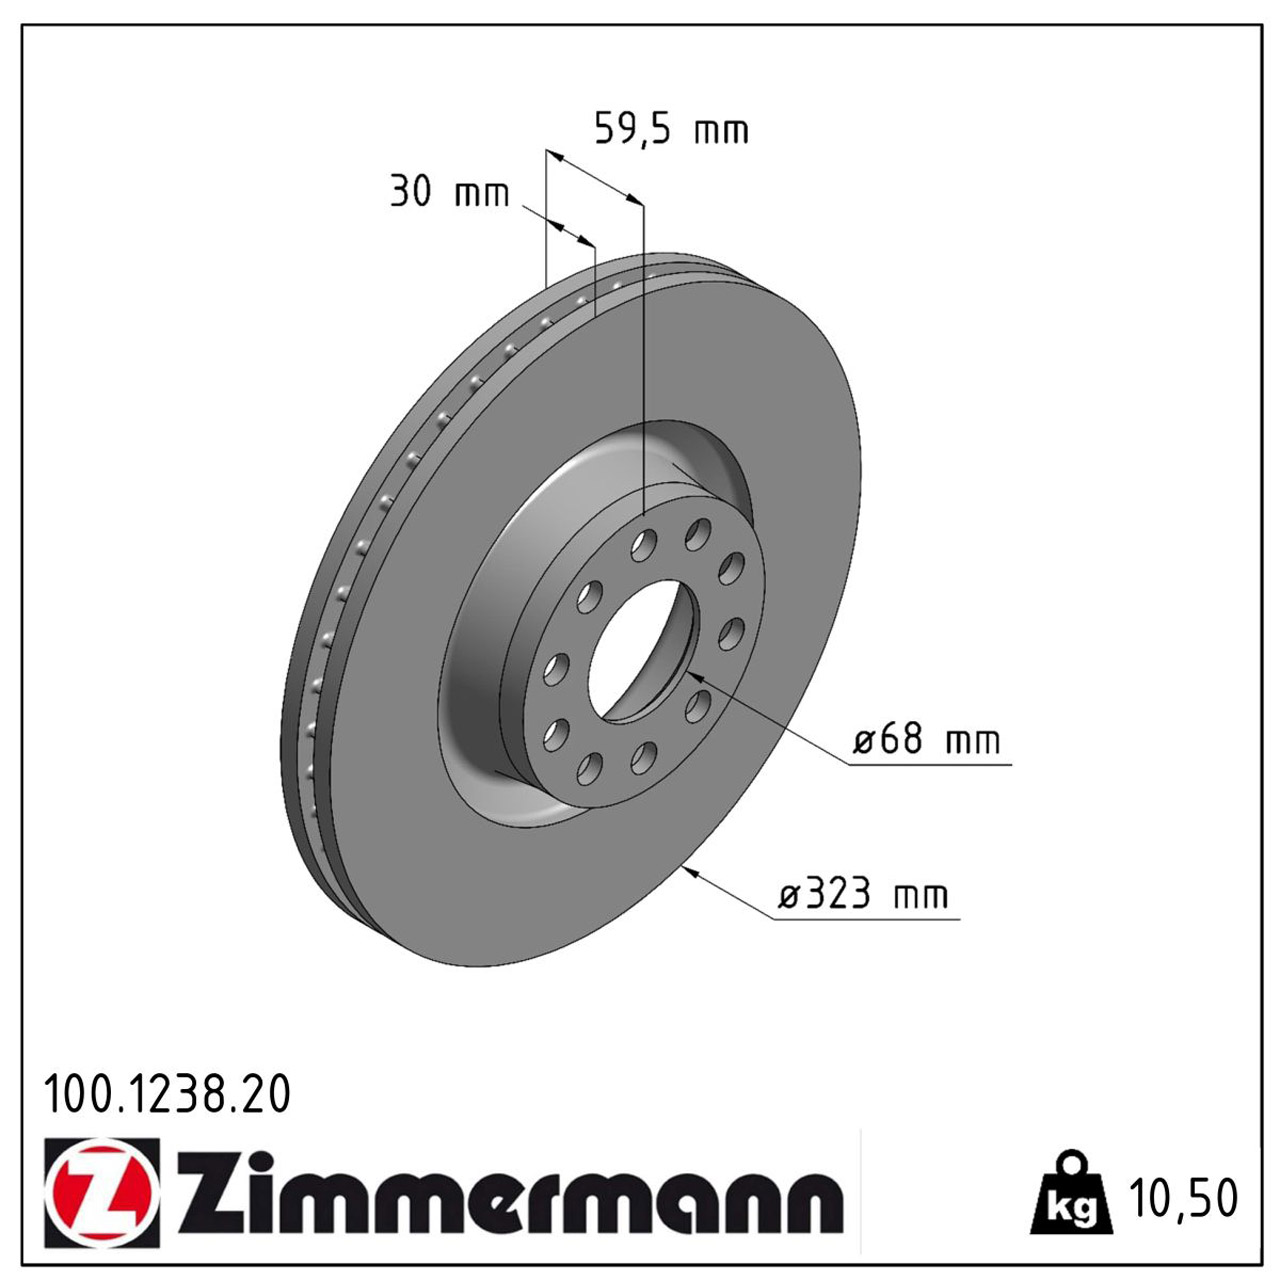 ZIMMERMANN Bremsscheiben + Bremsbeläge + Wako AUDI A8 4.2 + S8 (4D) 310/340/360 PS vorne